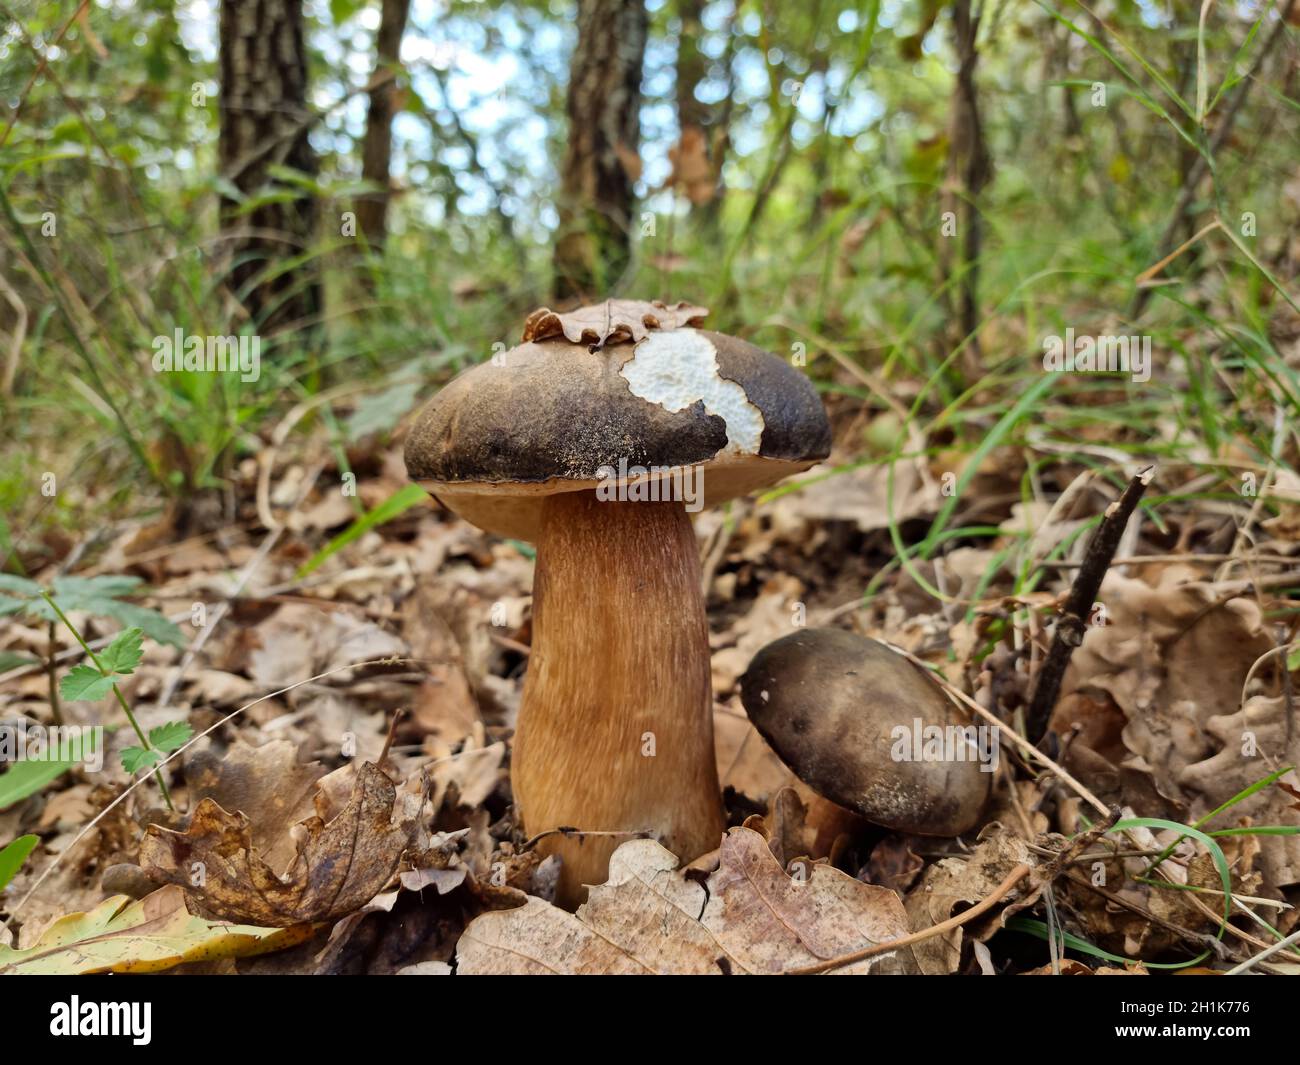 Funghi porcini in ecosistema selvatico, prodotti vegetali crudi autunnali Foto Stock